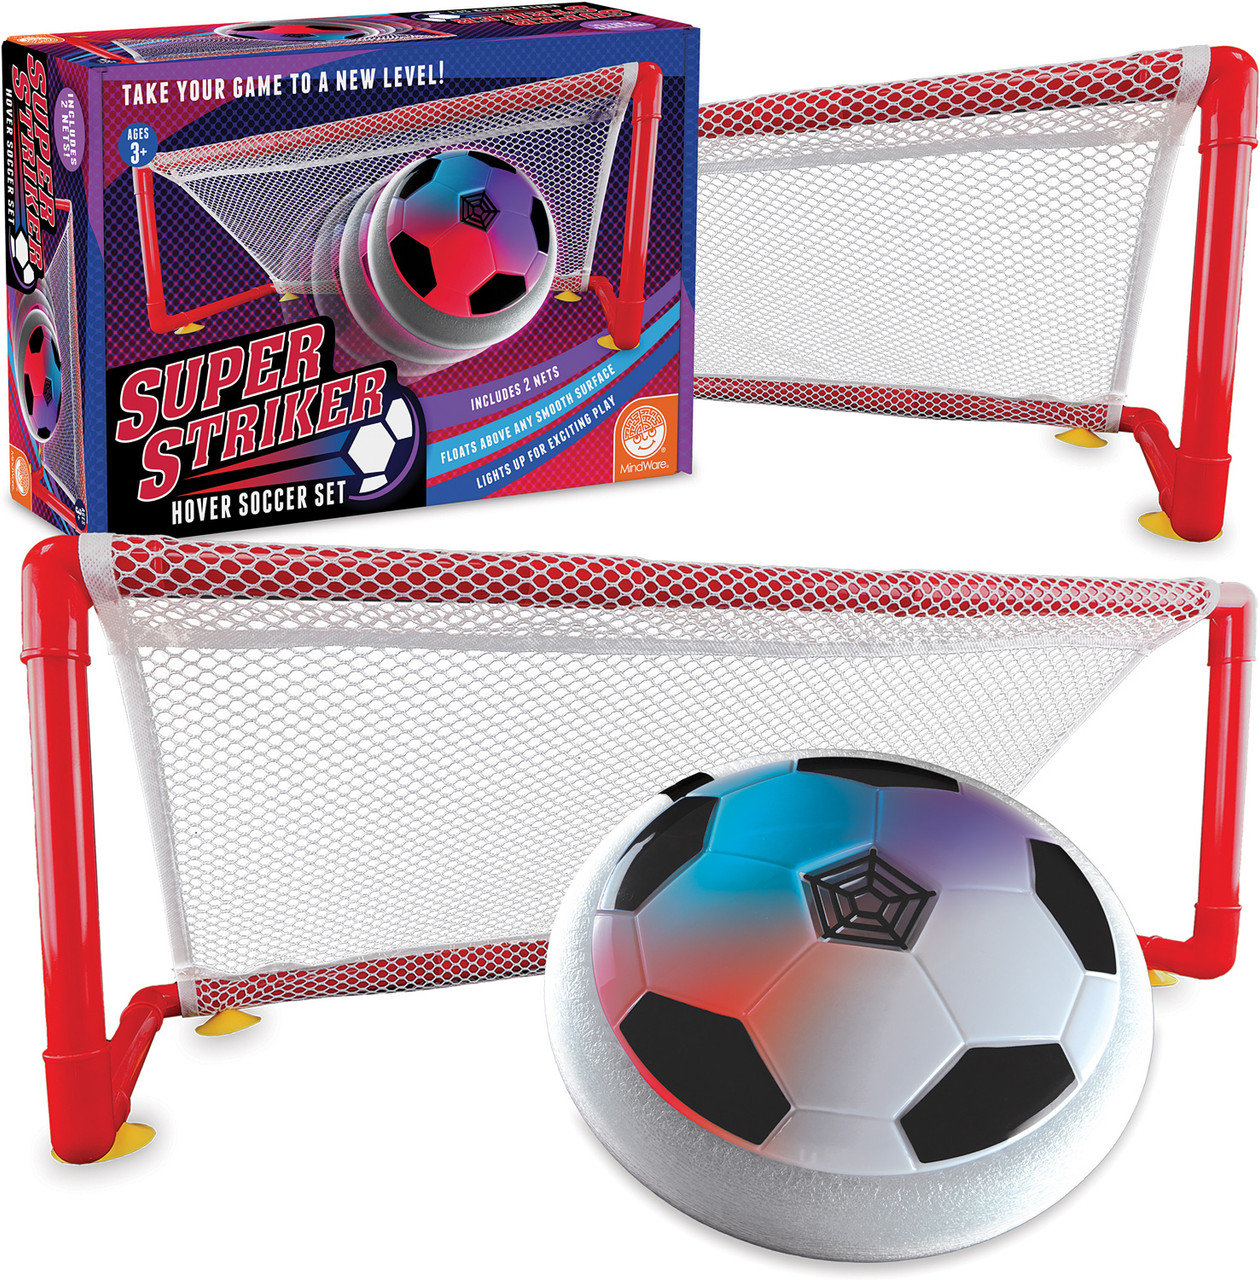 Super Striker Hover Soccer Set 5